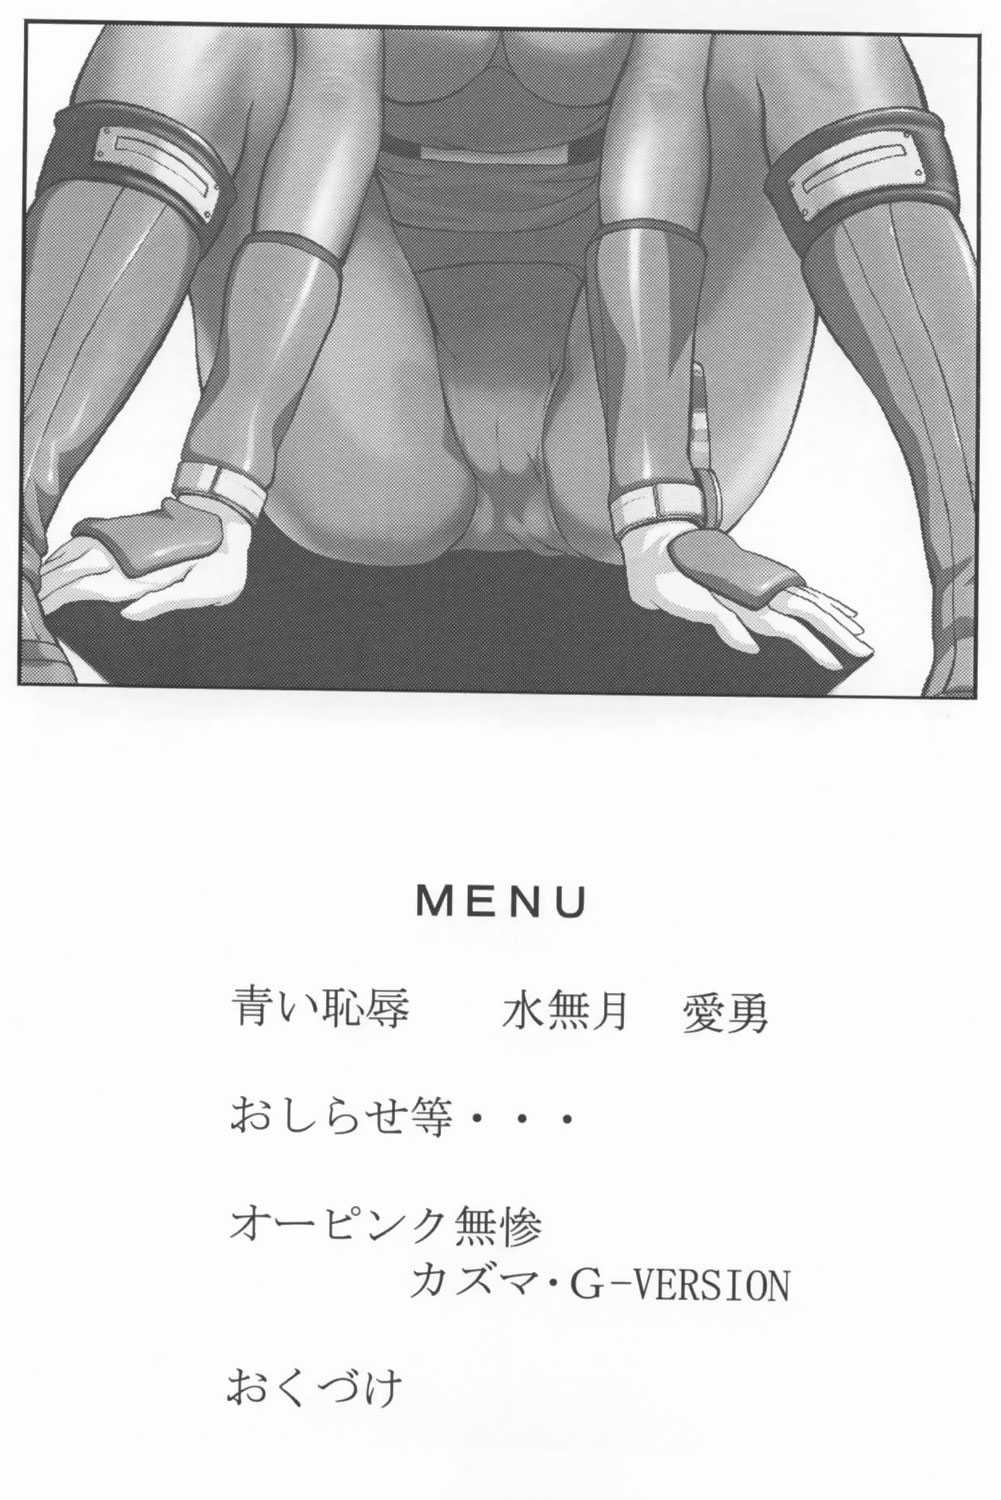 (Doujinshi) [CIRCLE AV] Bishoujo Senshi Gensou Vol 1 